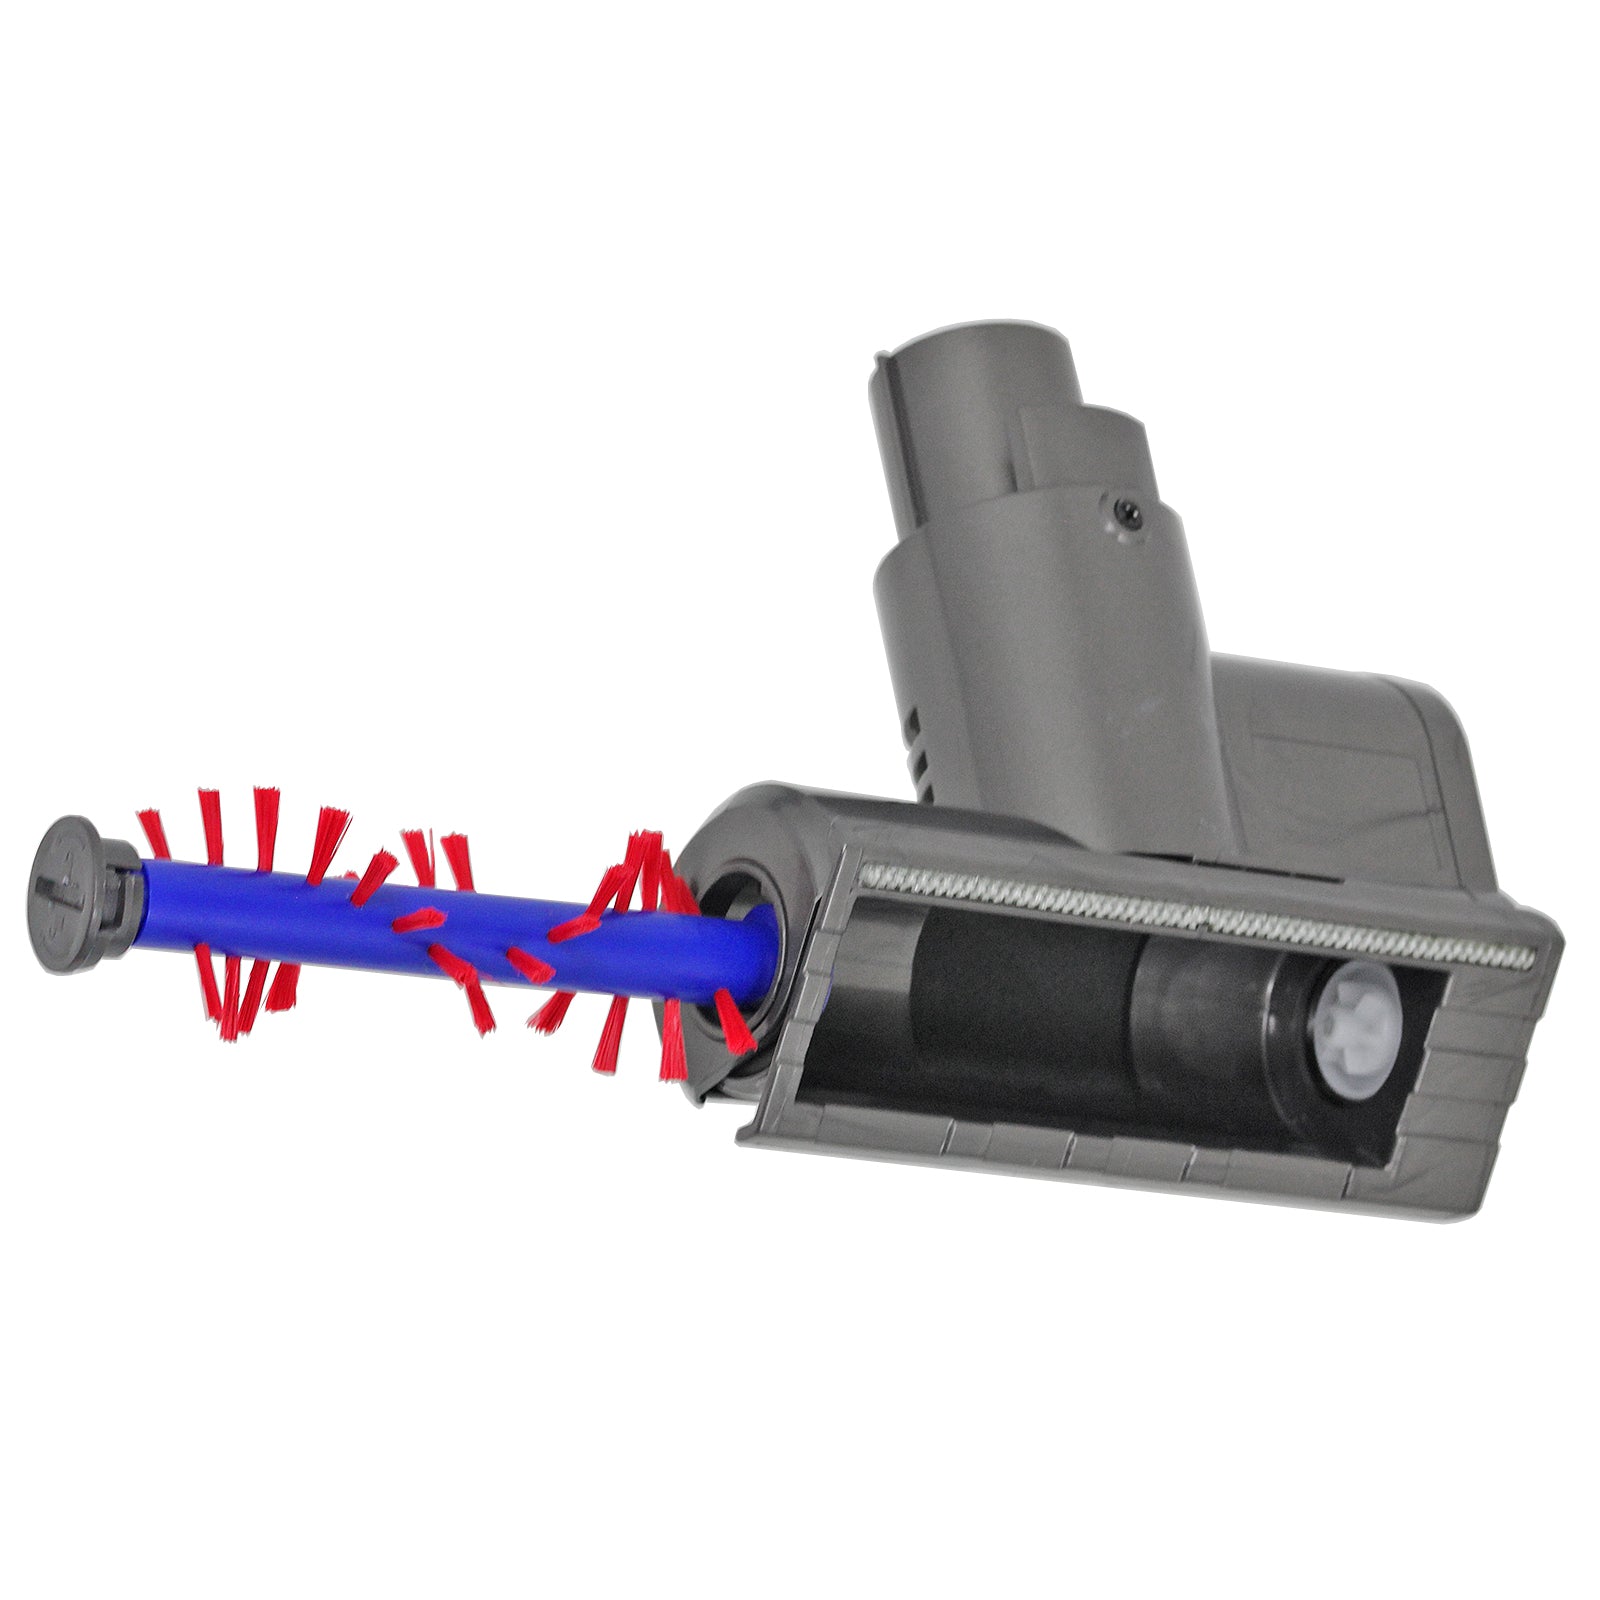 Vacuum Mini Turbine Brush for Dyson V11 SV14 Cordless Motorised Tool Attachment